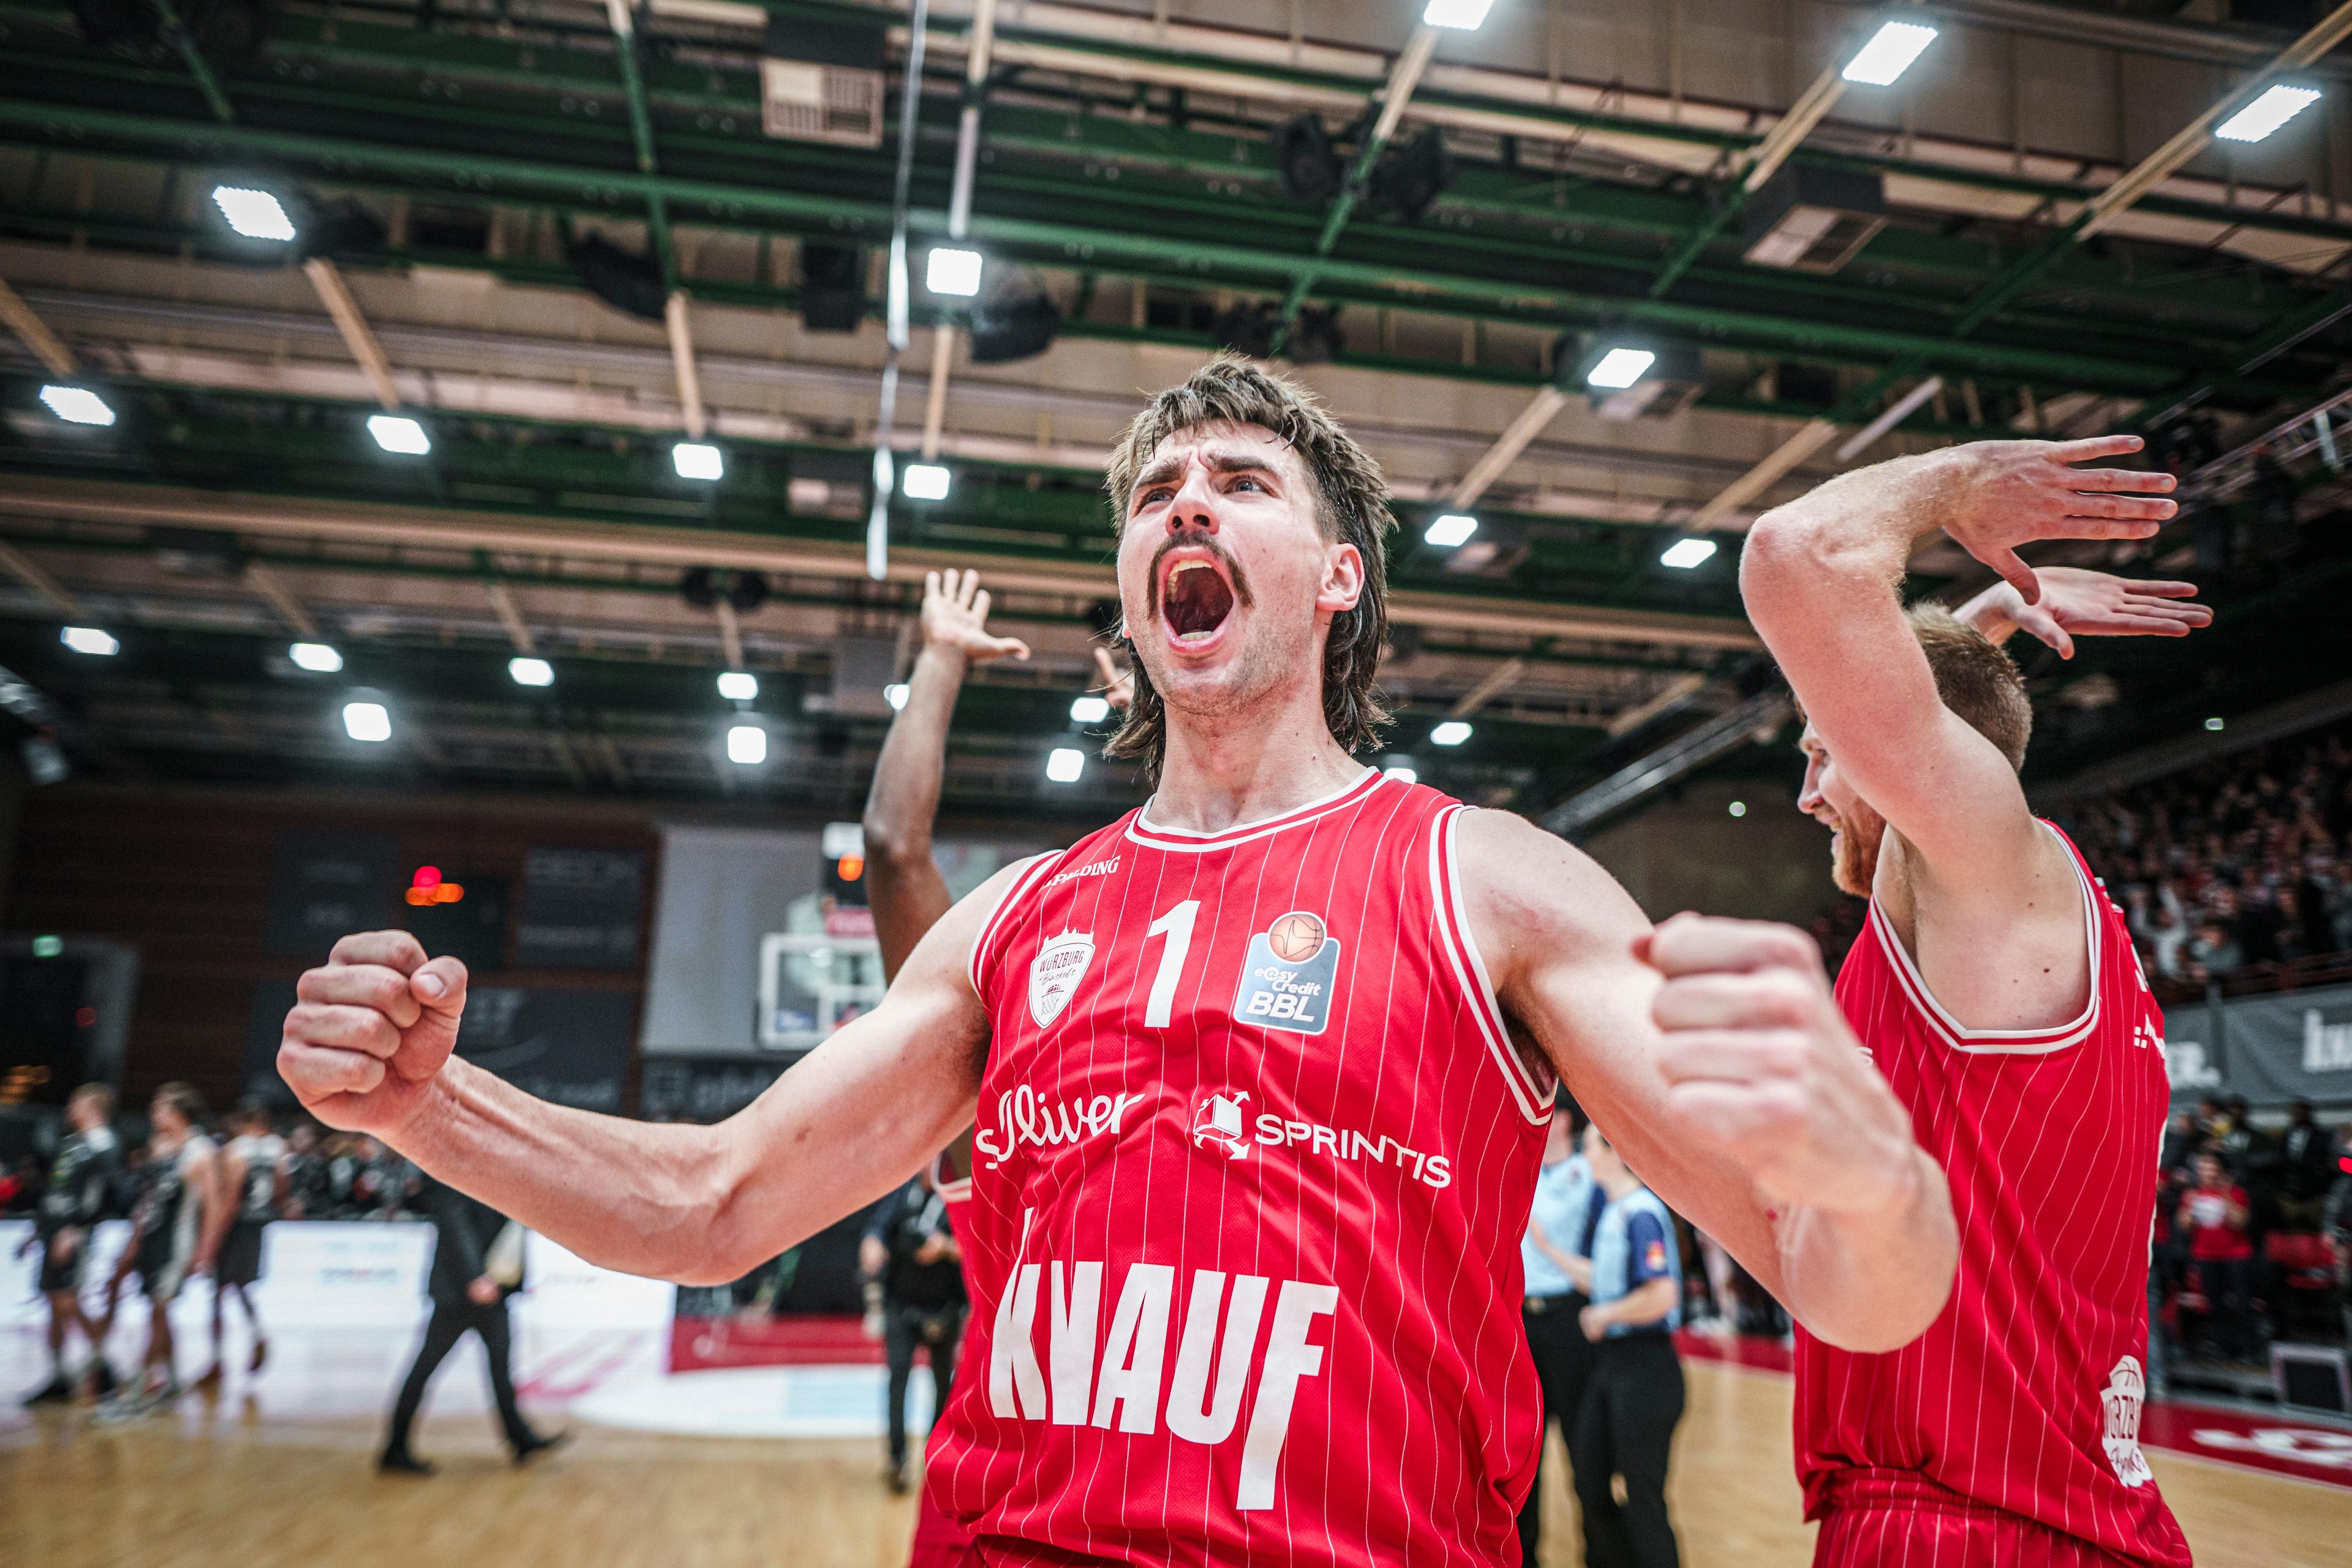 Die Würzburg Baskets feiern ihren zweiten Sieg in eigener Halle. Mit dem fünften Saisonsieg halten sie Anschluss an die direkten Playoffränge. RASTA Vechta verliert erstmals zwei Spiele am Stück und tut sich auswärts weiterhin schwer (ein Sieg, drei Niederlagen).